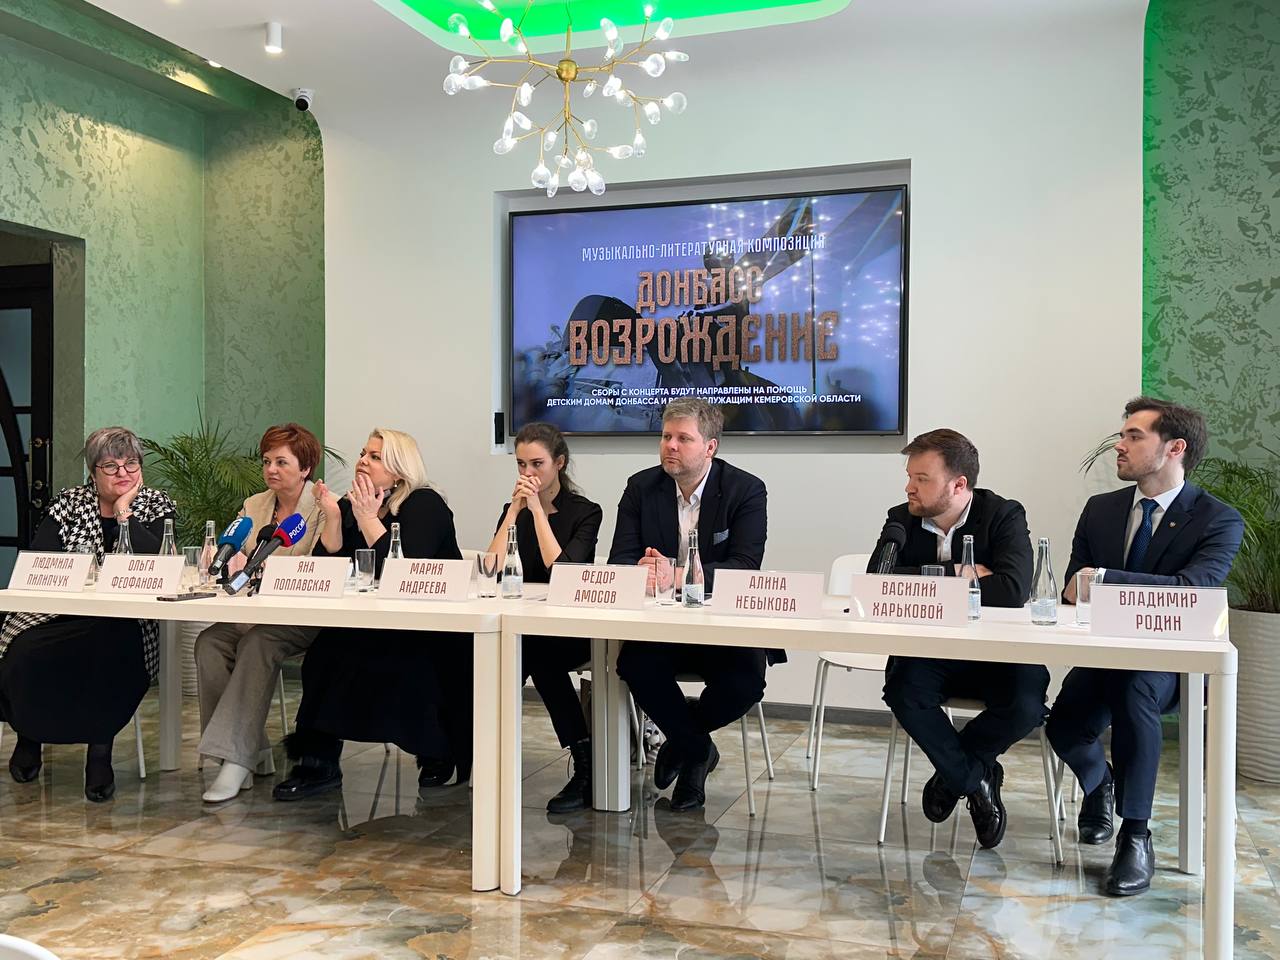 «Культура – фундамент страны»: в Кемерове прошла пресс-конференция, посвящённая музыкальному концерту «Донбасс. Возрождение»